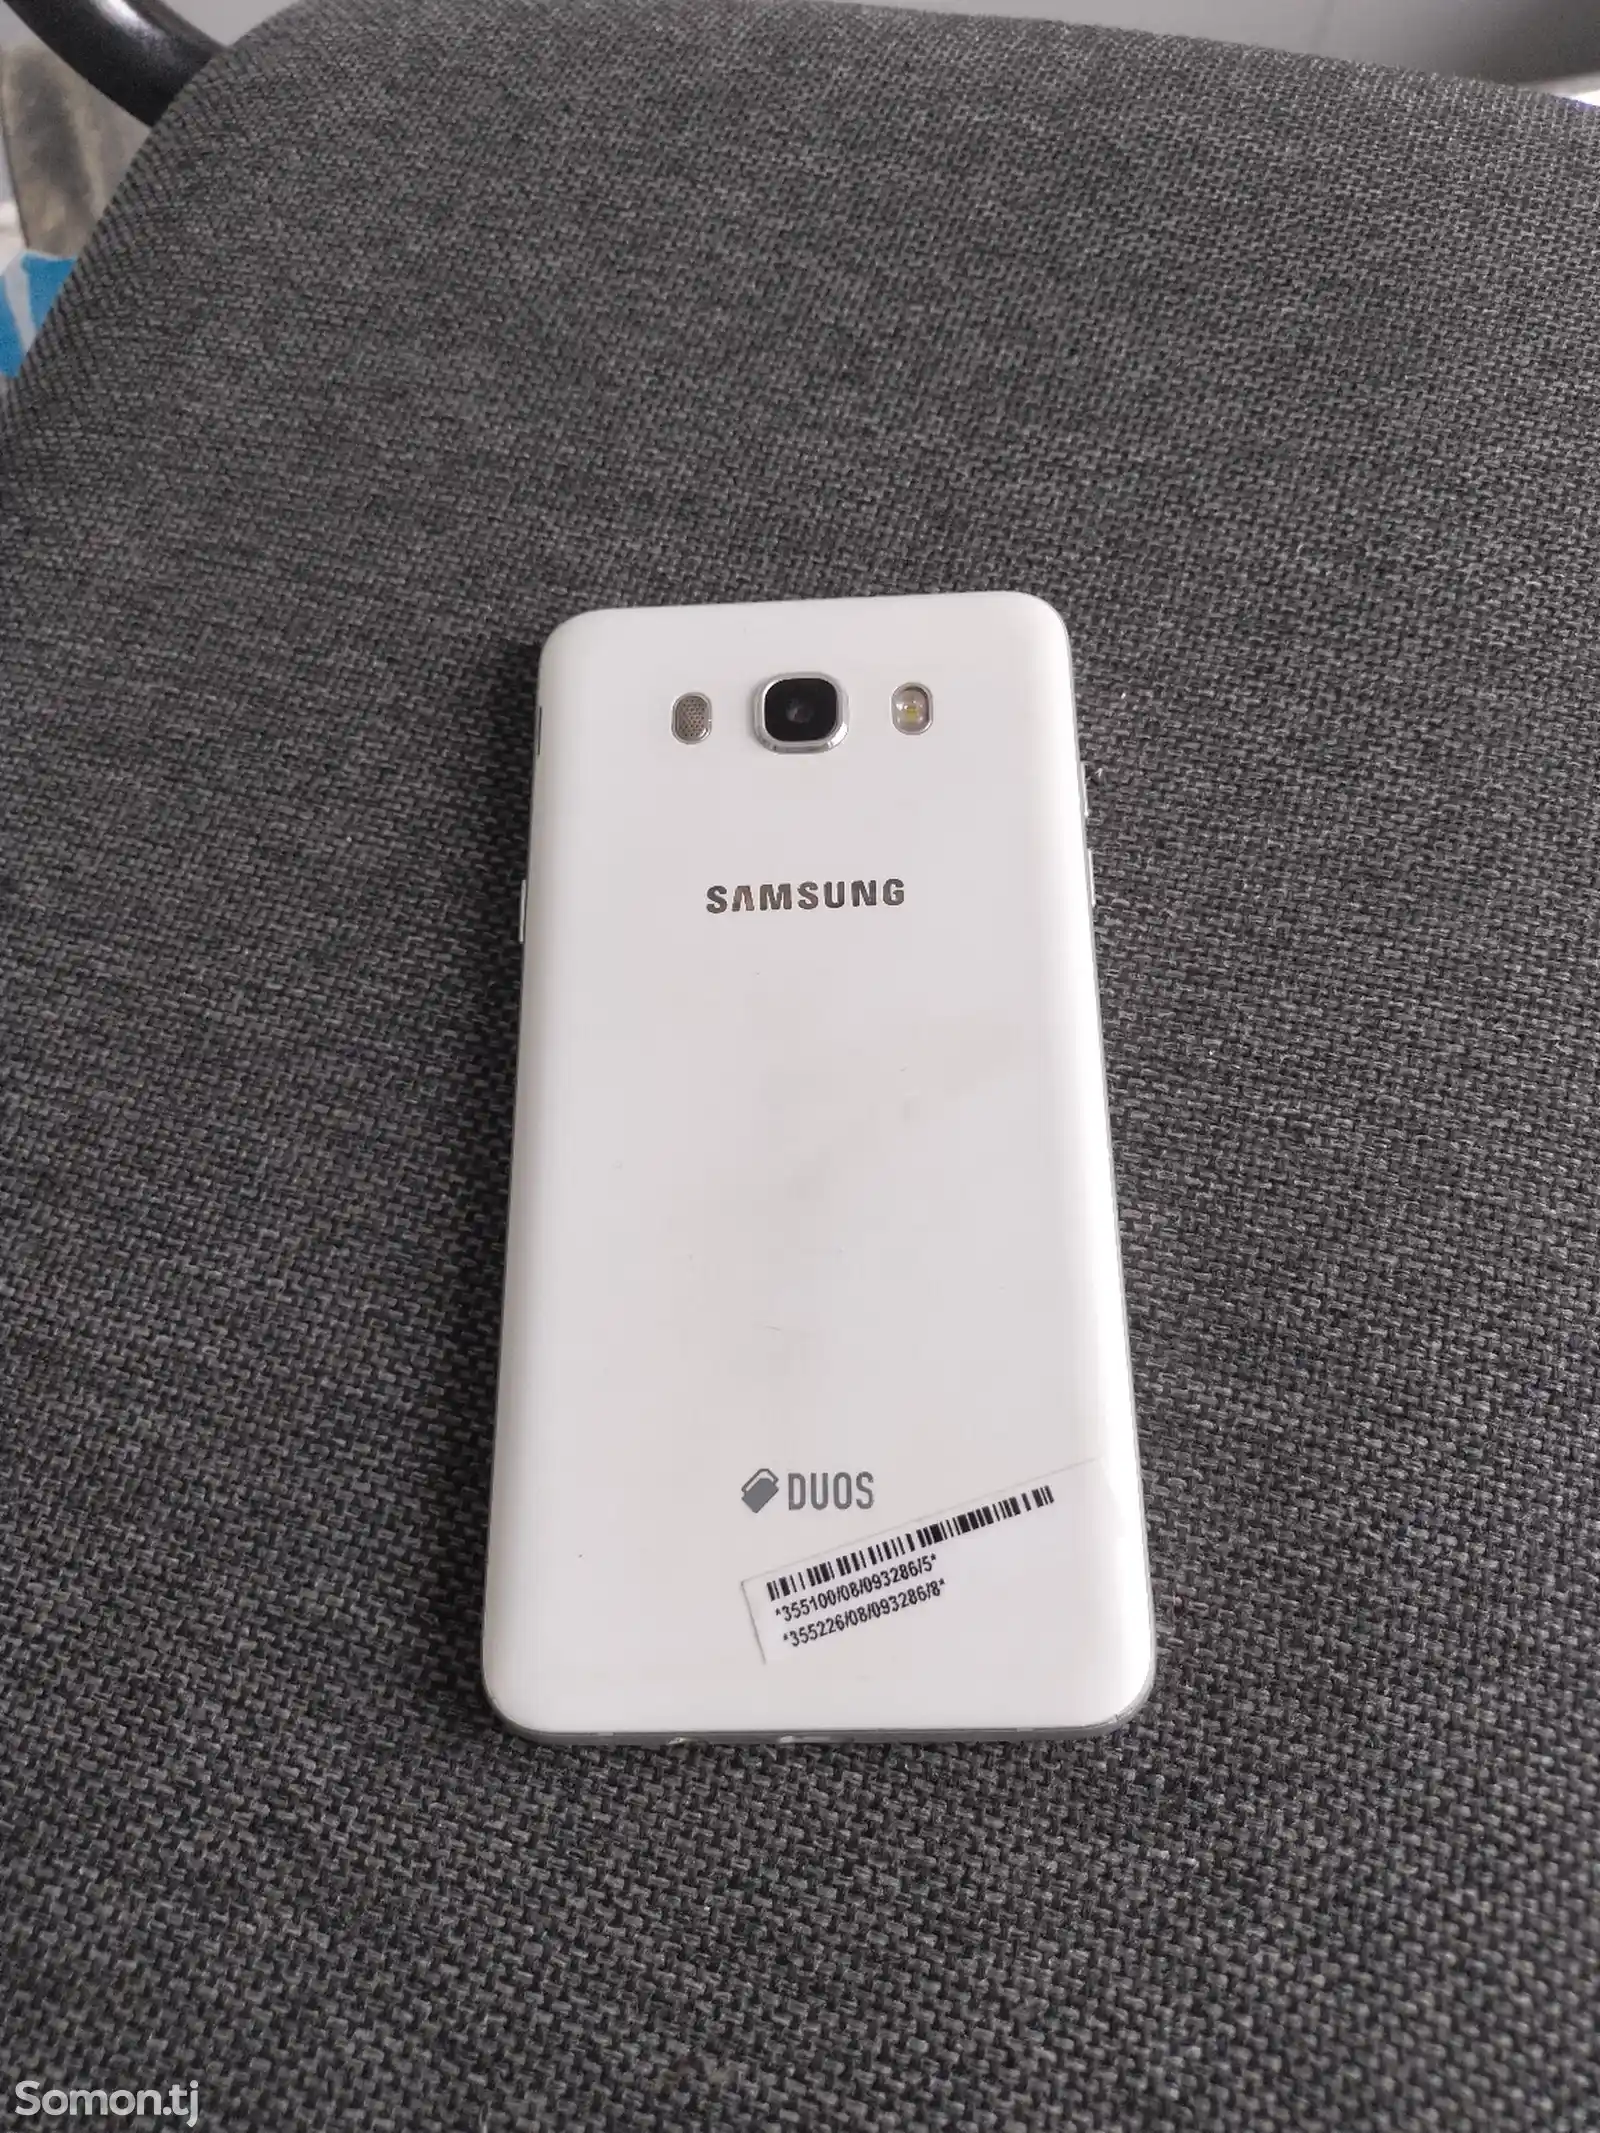 Samsung Galaxy J7-3